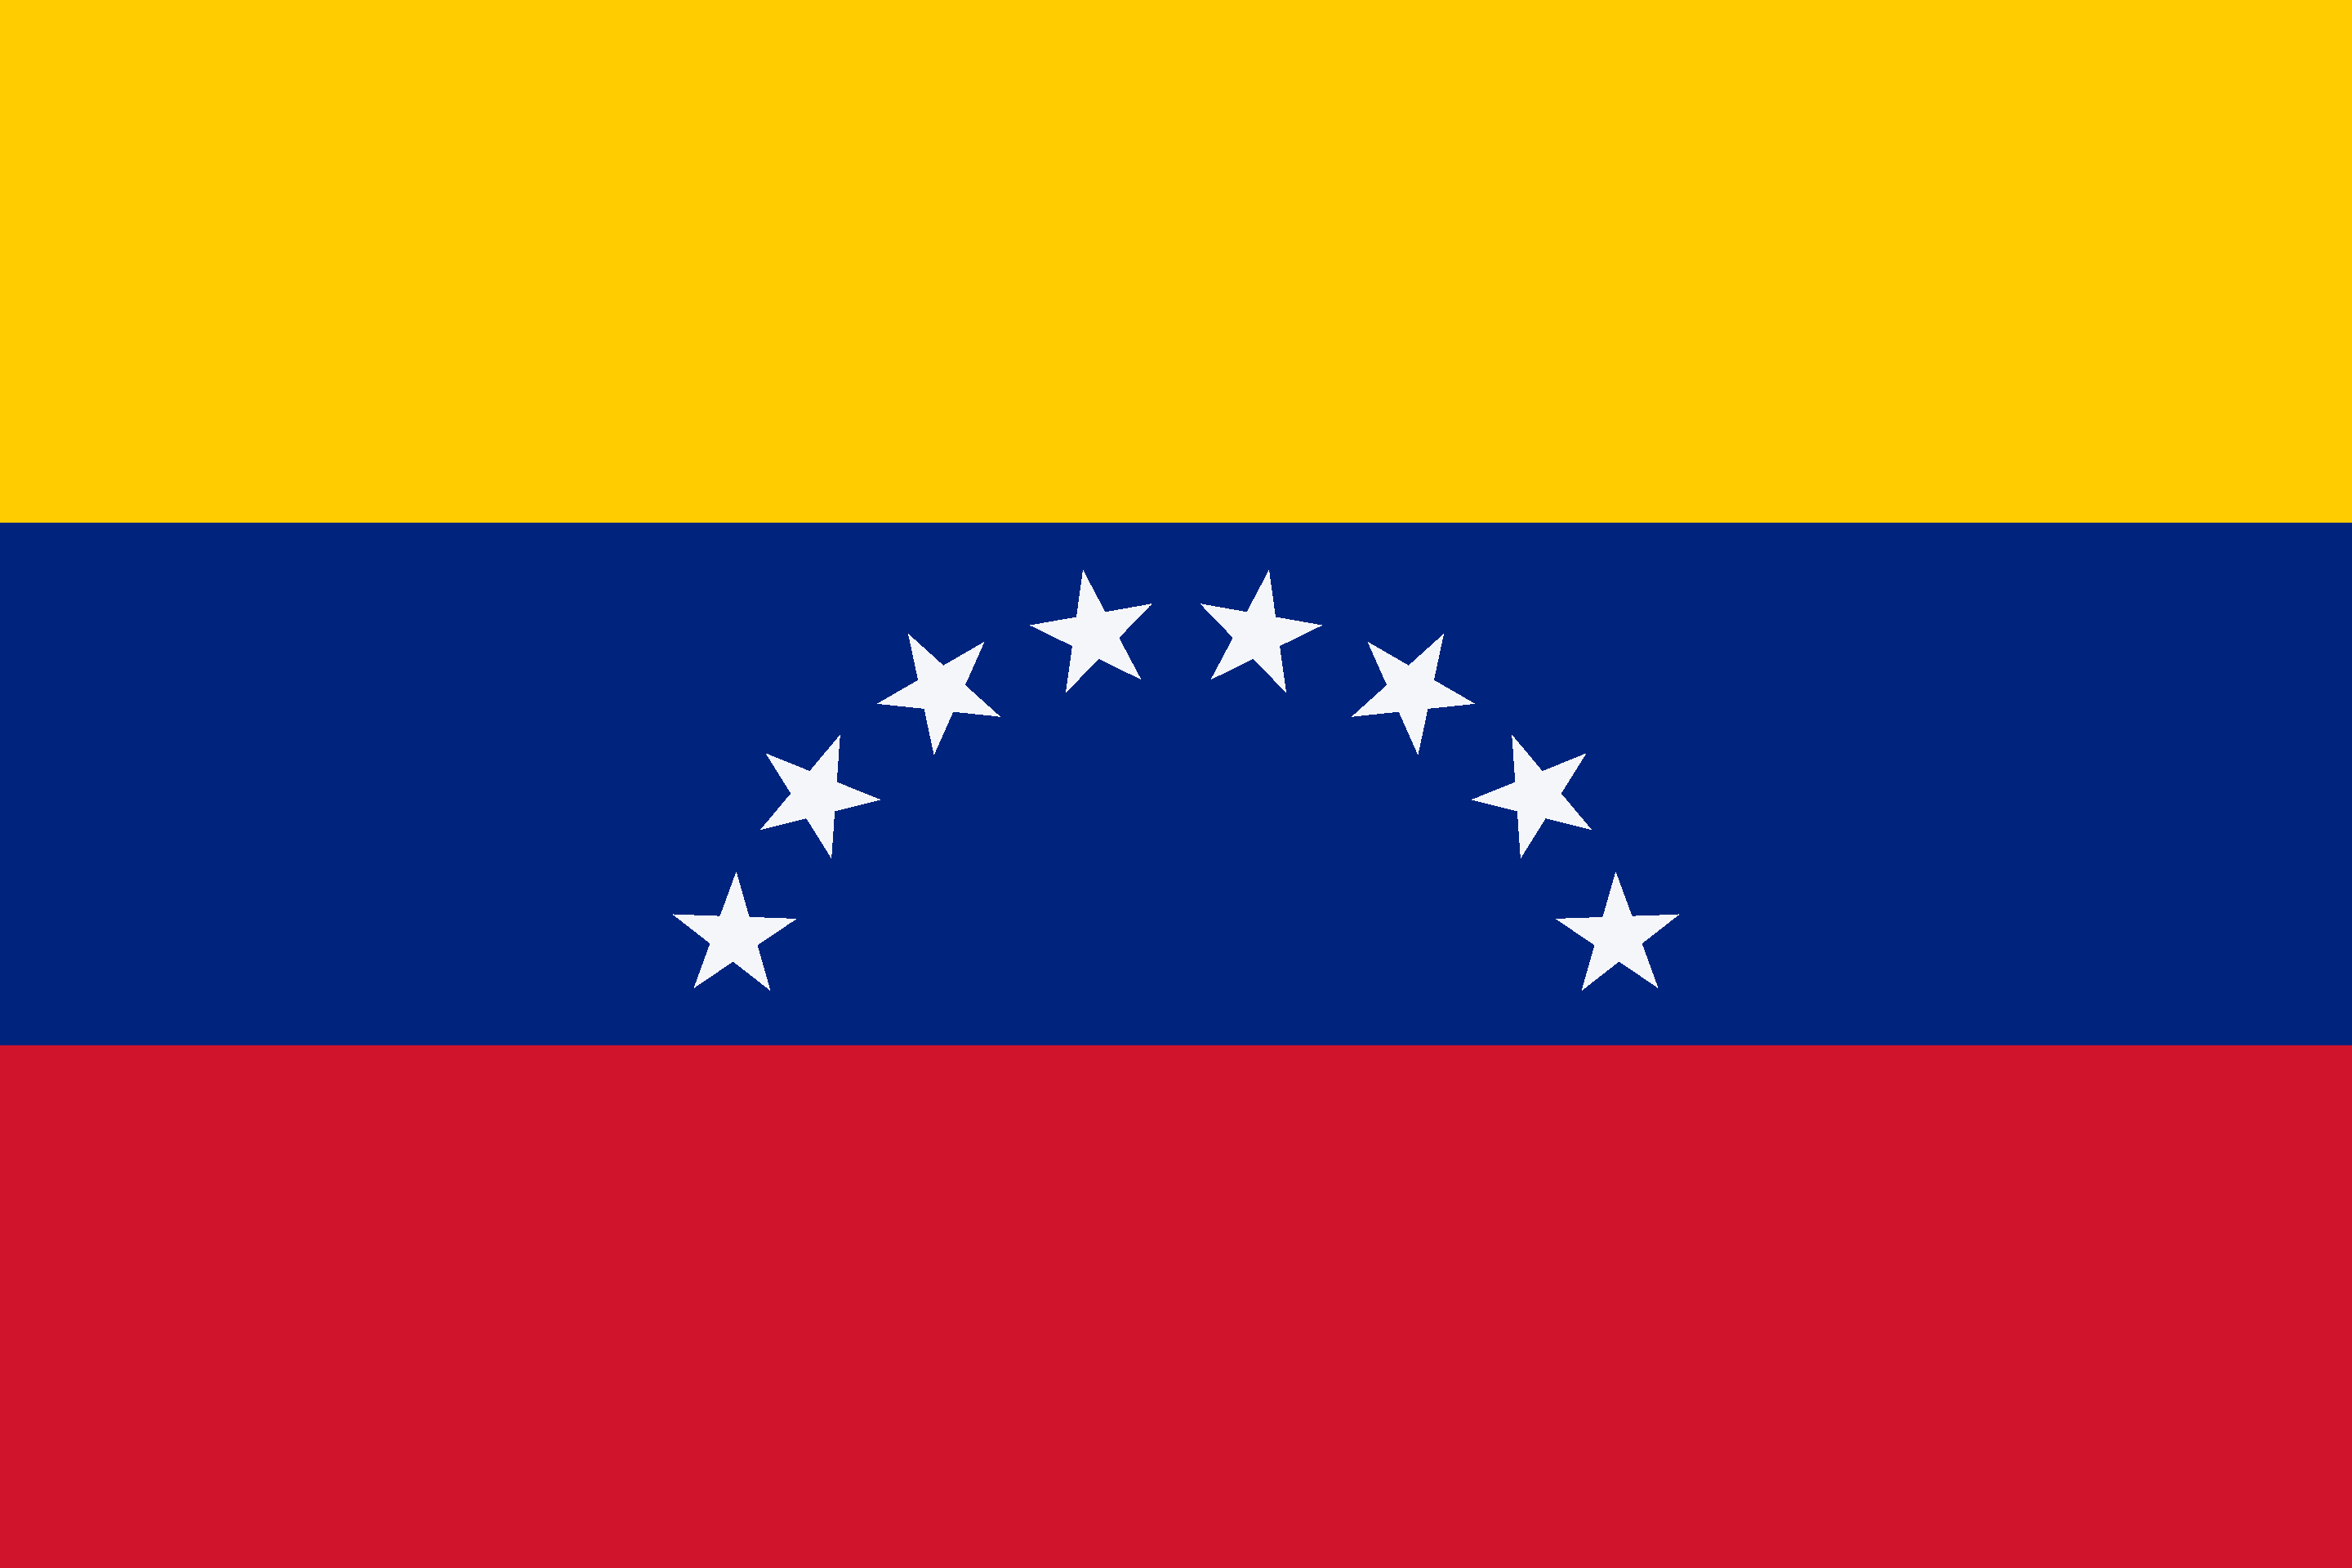 Drone Laws in Venezuela